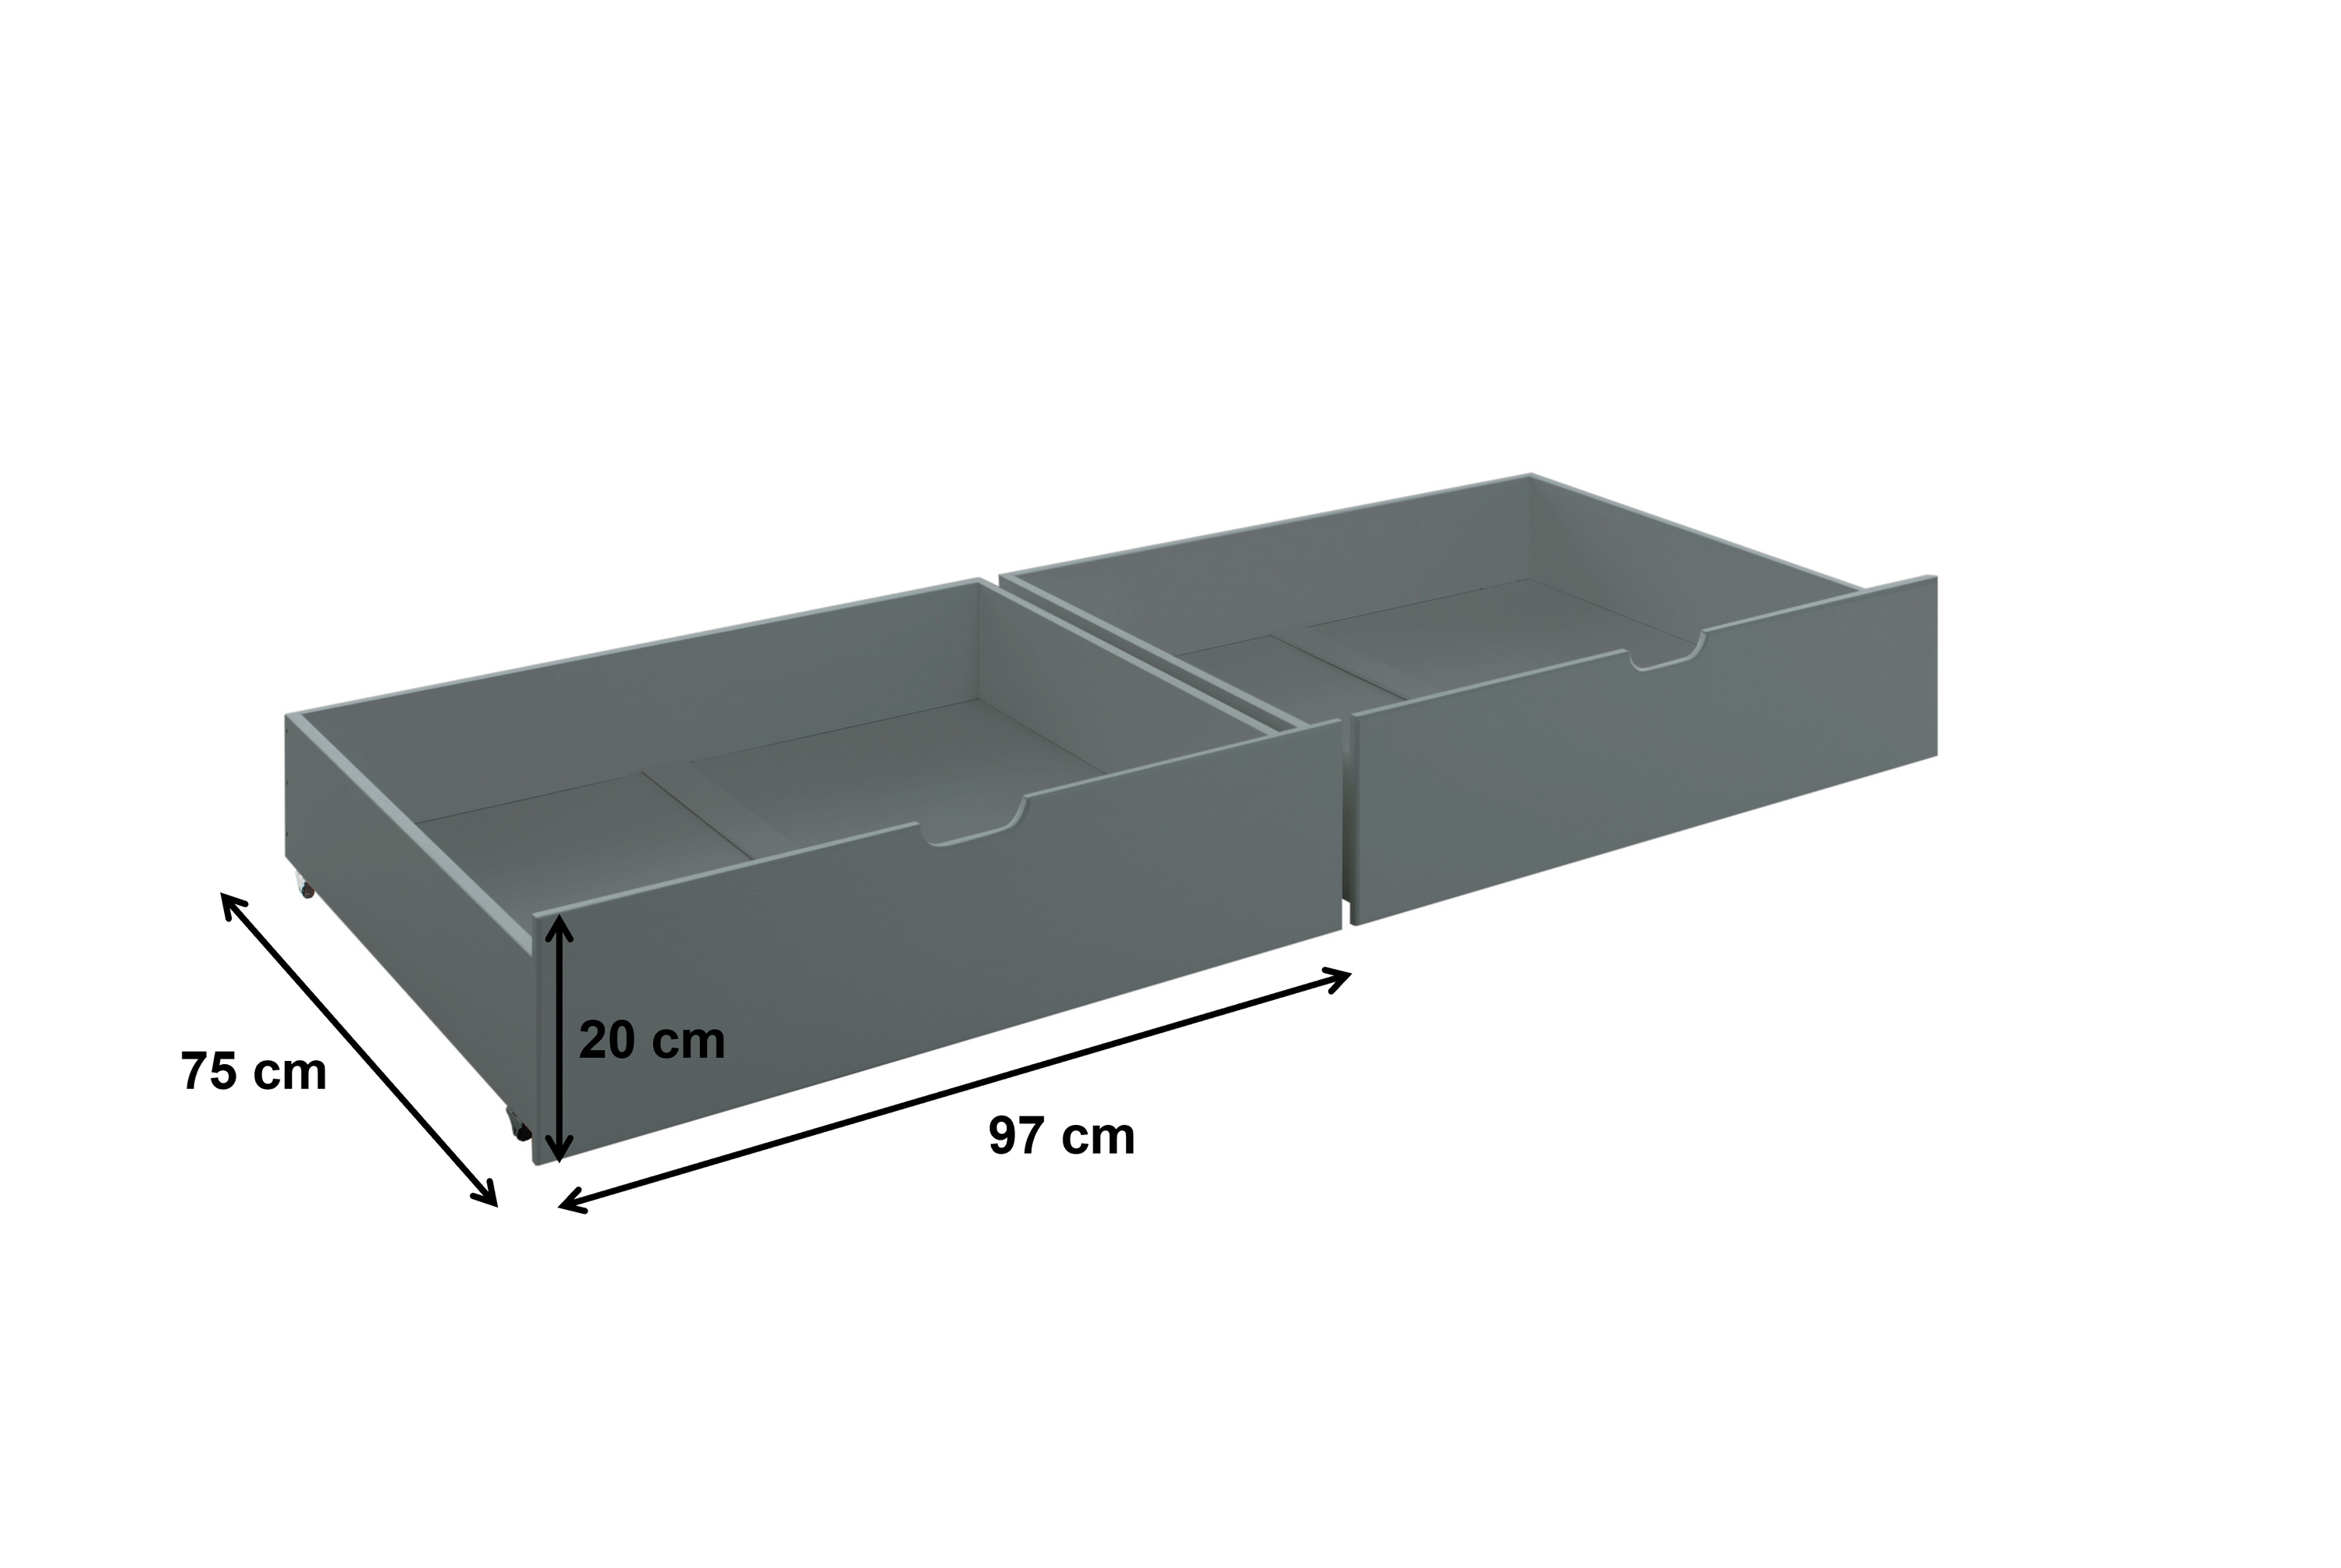 2x Bettkasten Alain mit Bodenplatten Kiefer massiv grau auf 4 Rollen B 97 - T 75 cm - H 20 cm